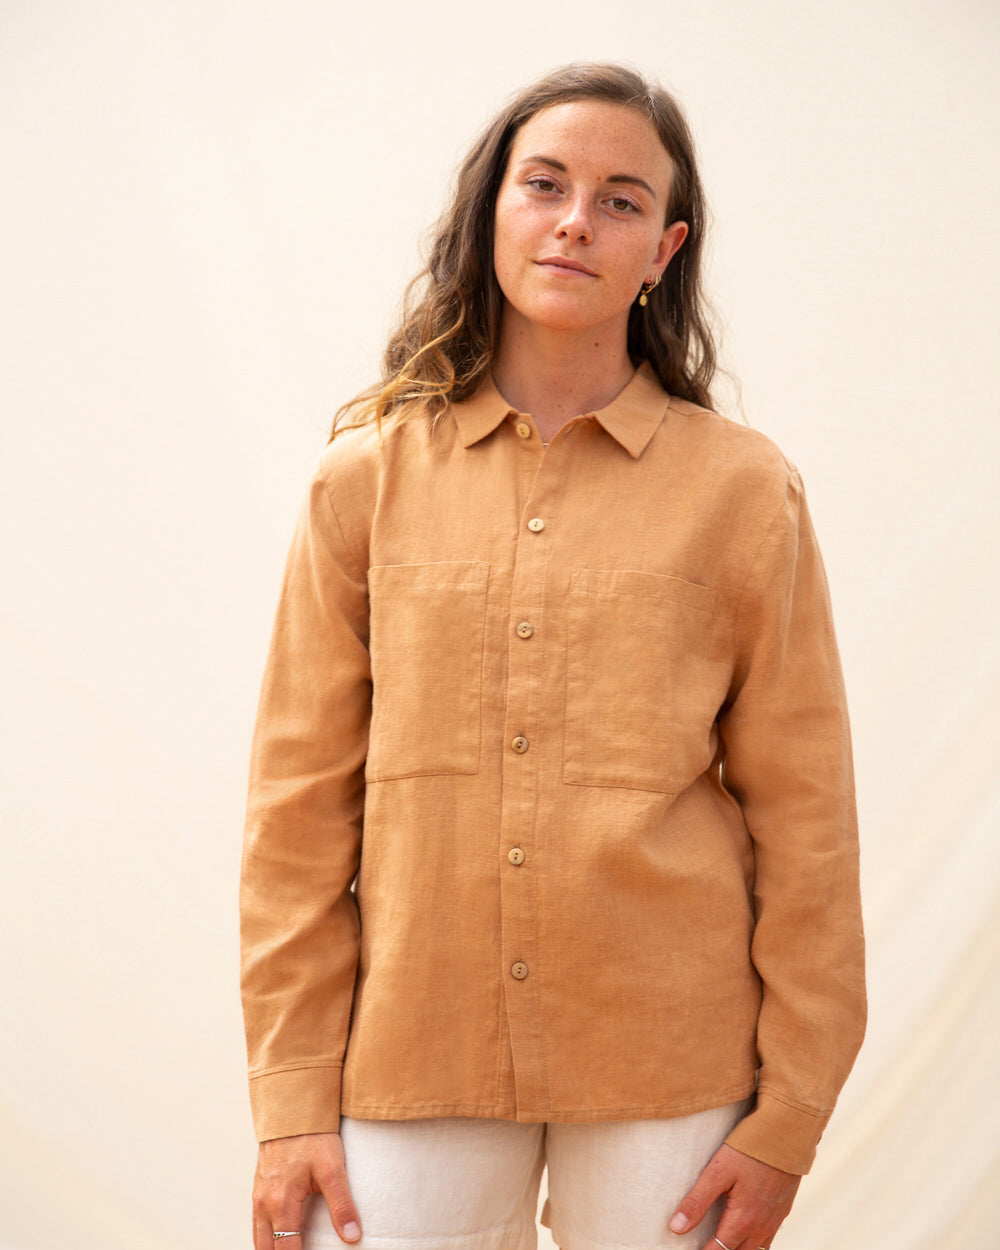 Brown, long-sleeved hazel shirt made of linen from Matona